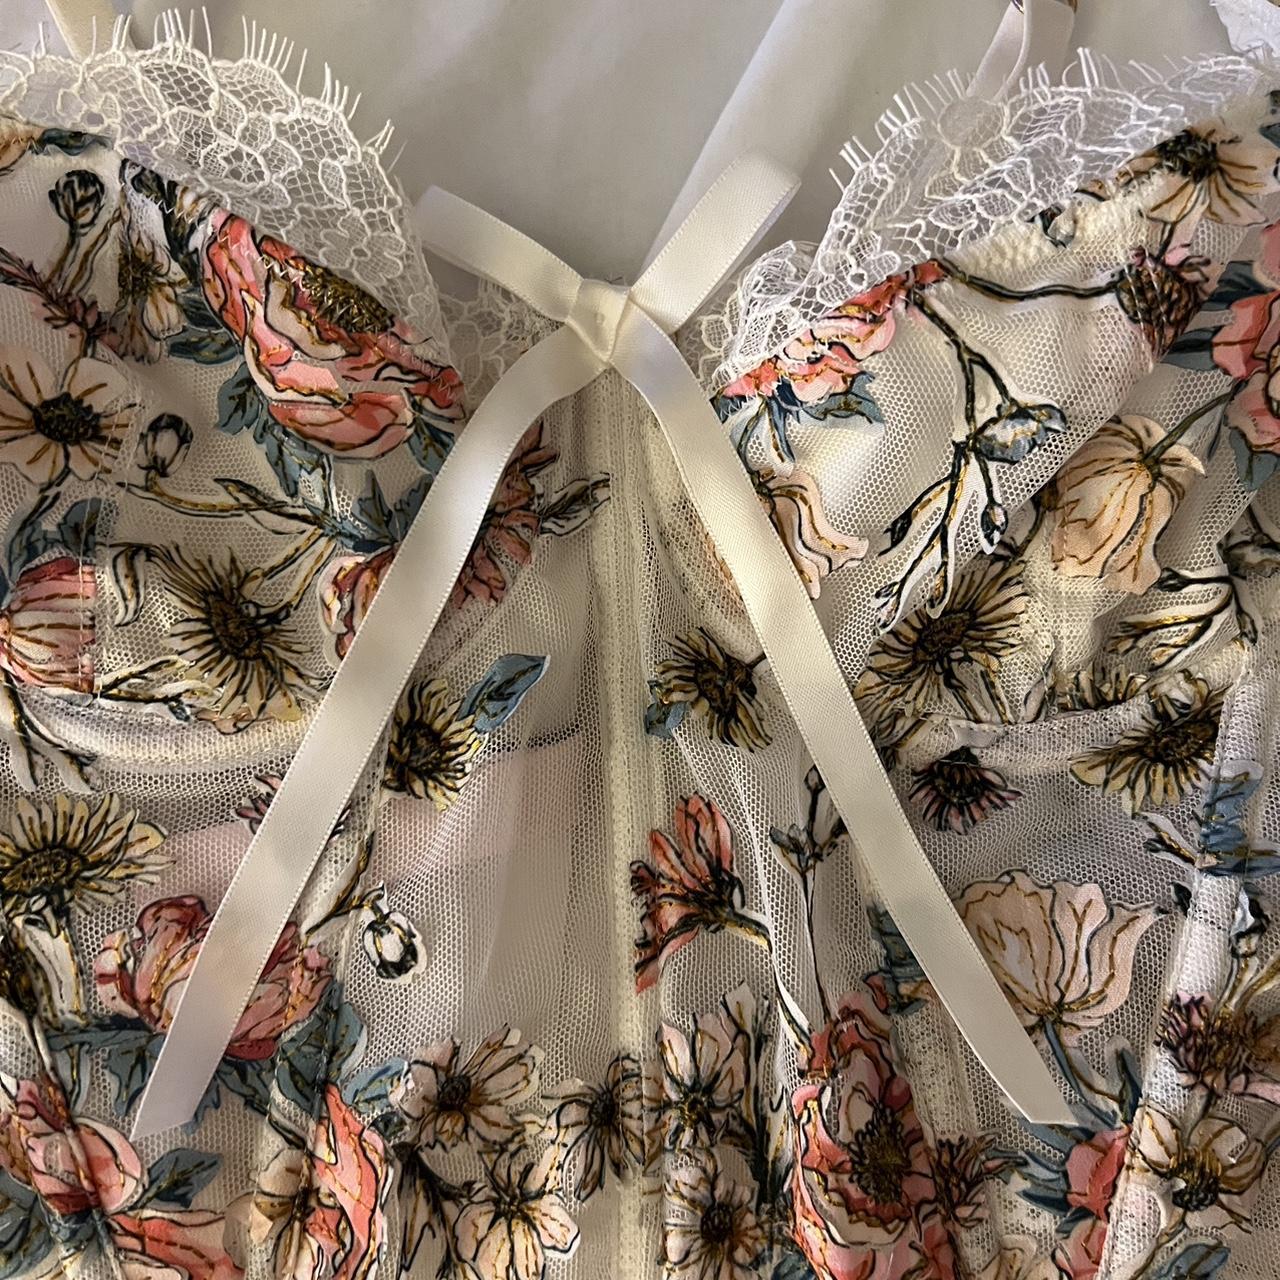 Victoria's Secret floral corset top 🤍 soooo dreamy - Depop